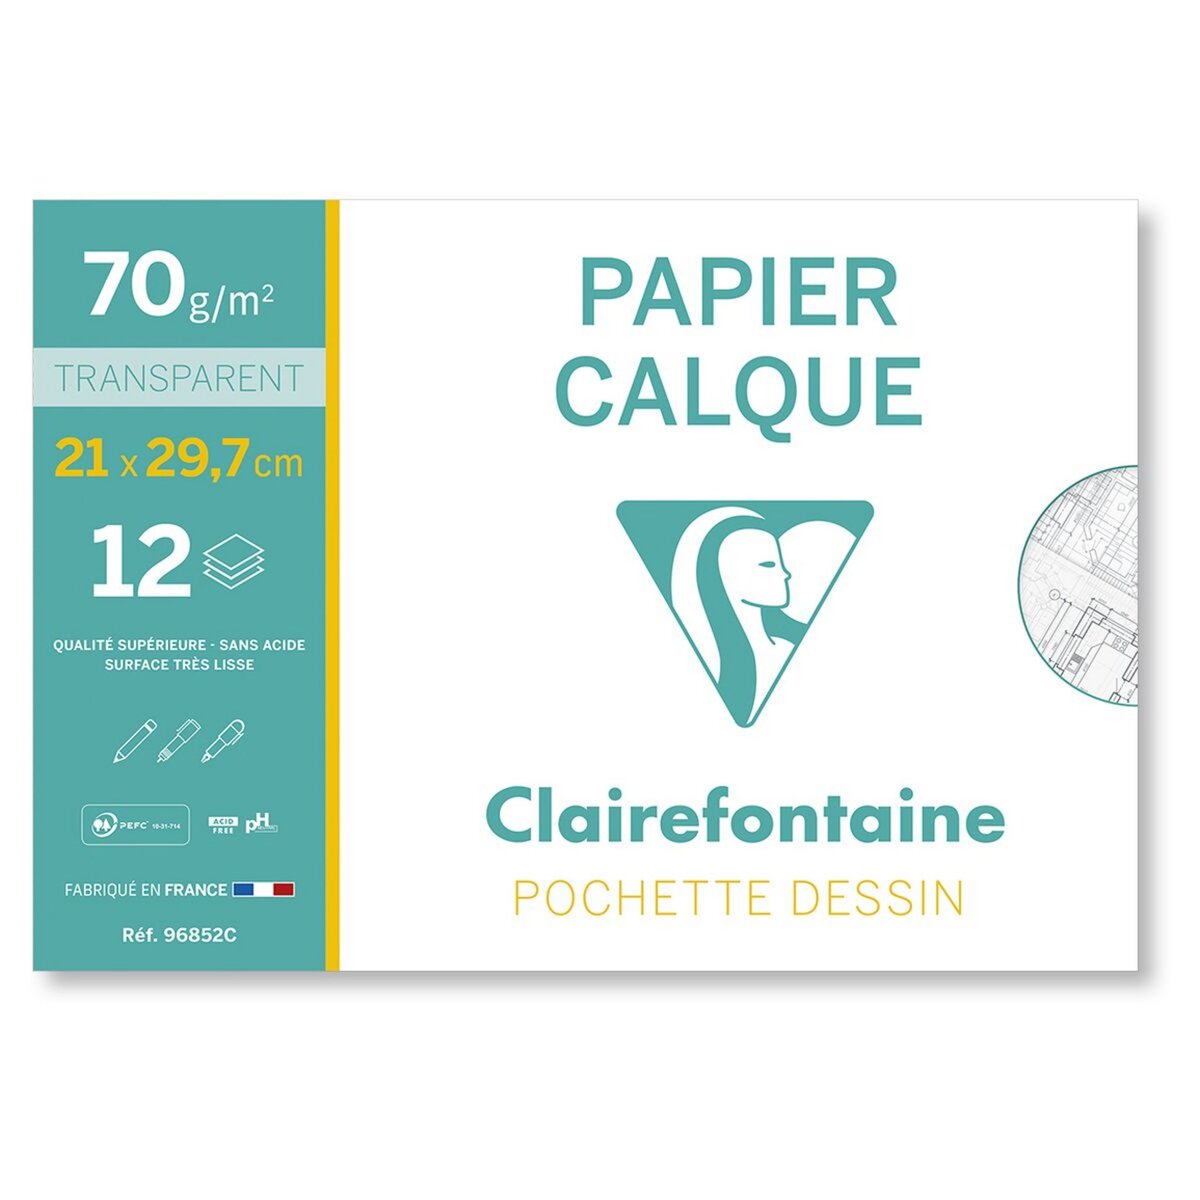 CLAIREFONTAINE Pochette papier calque 12 feuilles A4